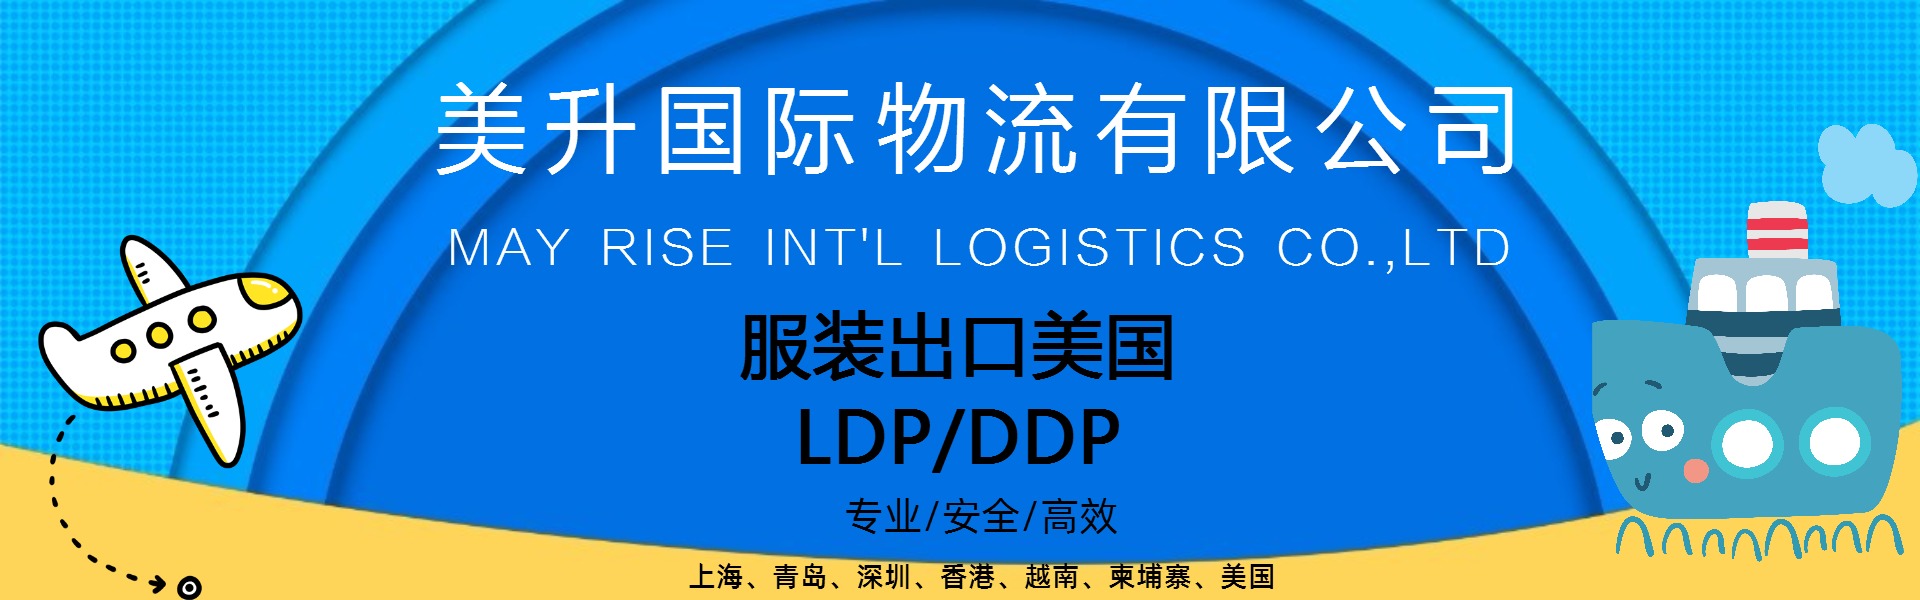 成衣纺织品轻松出口美国LDP/DDP服务